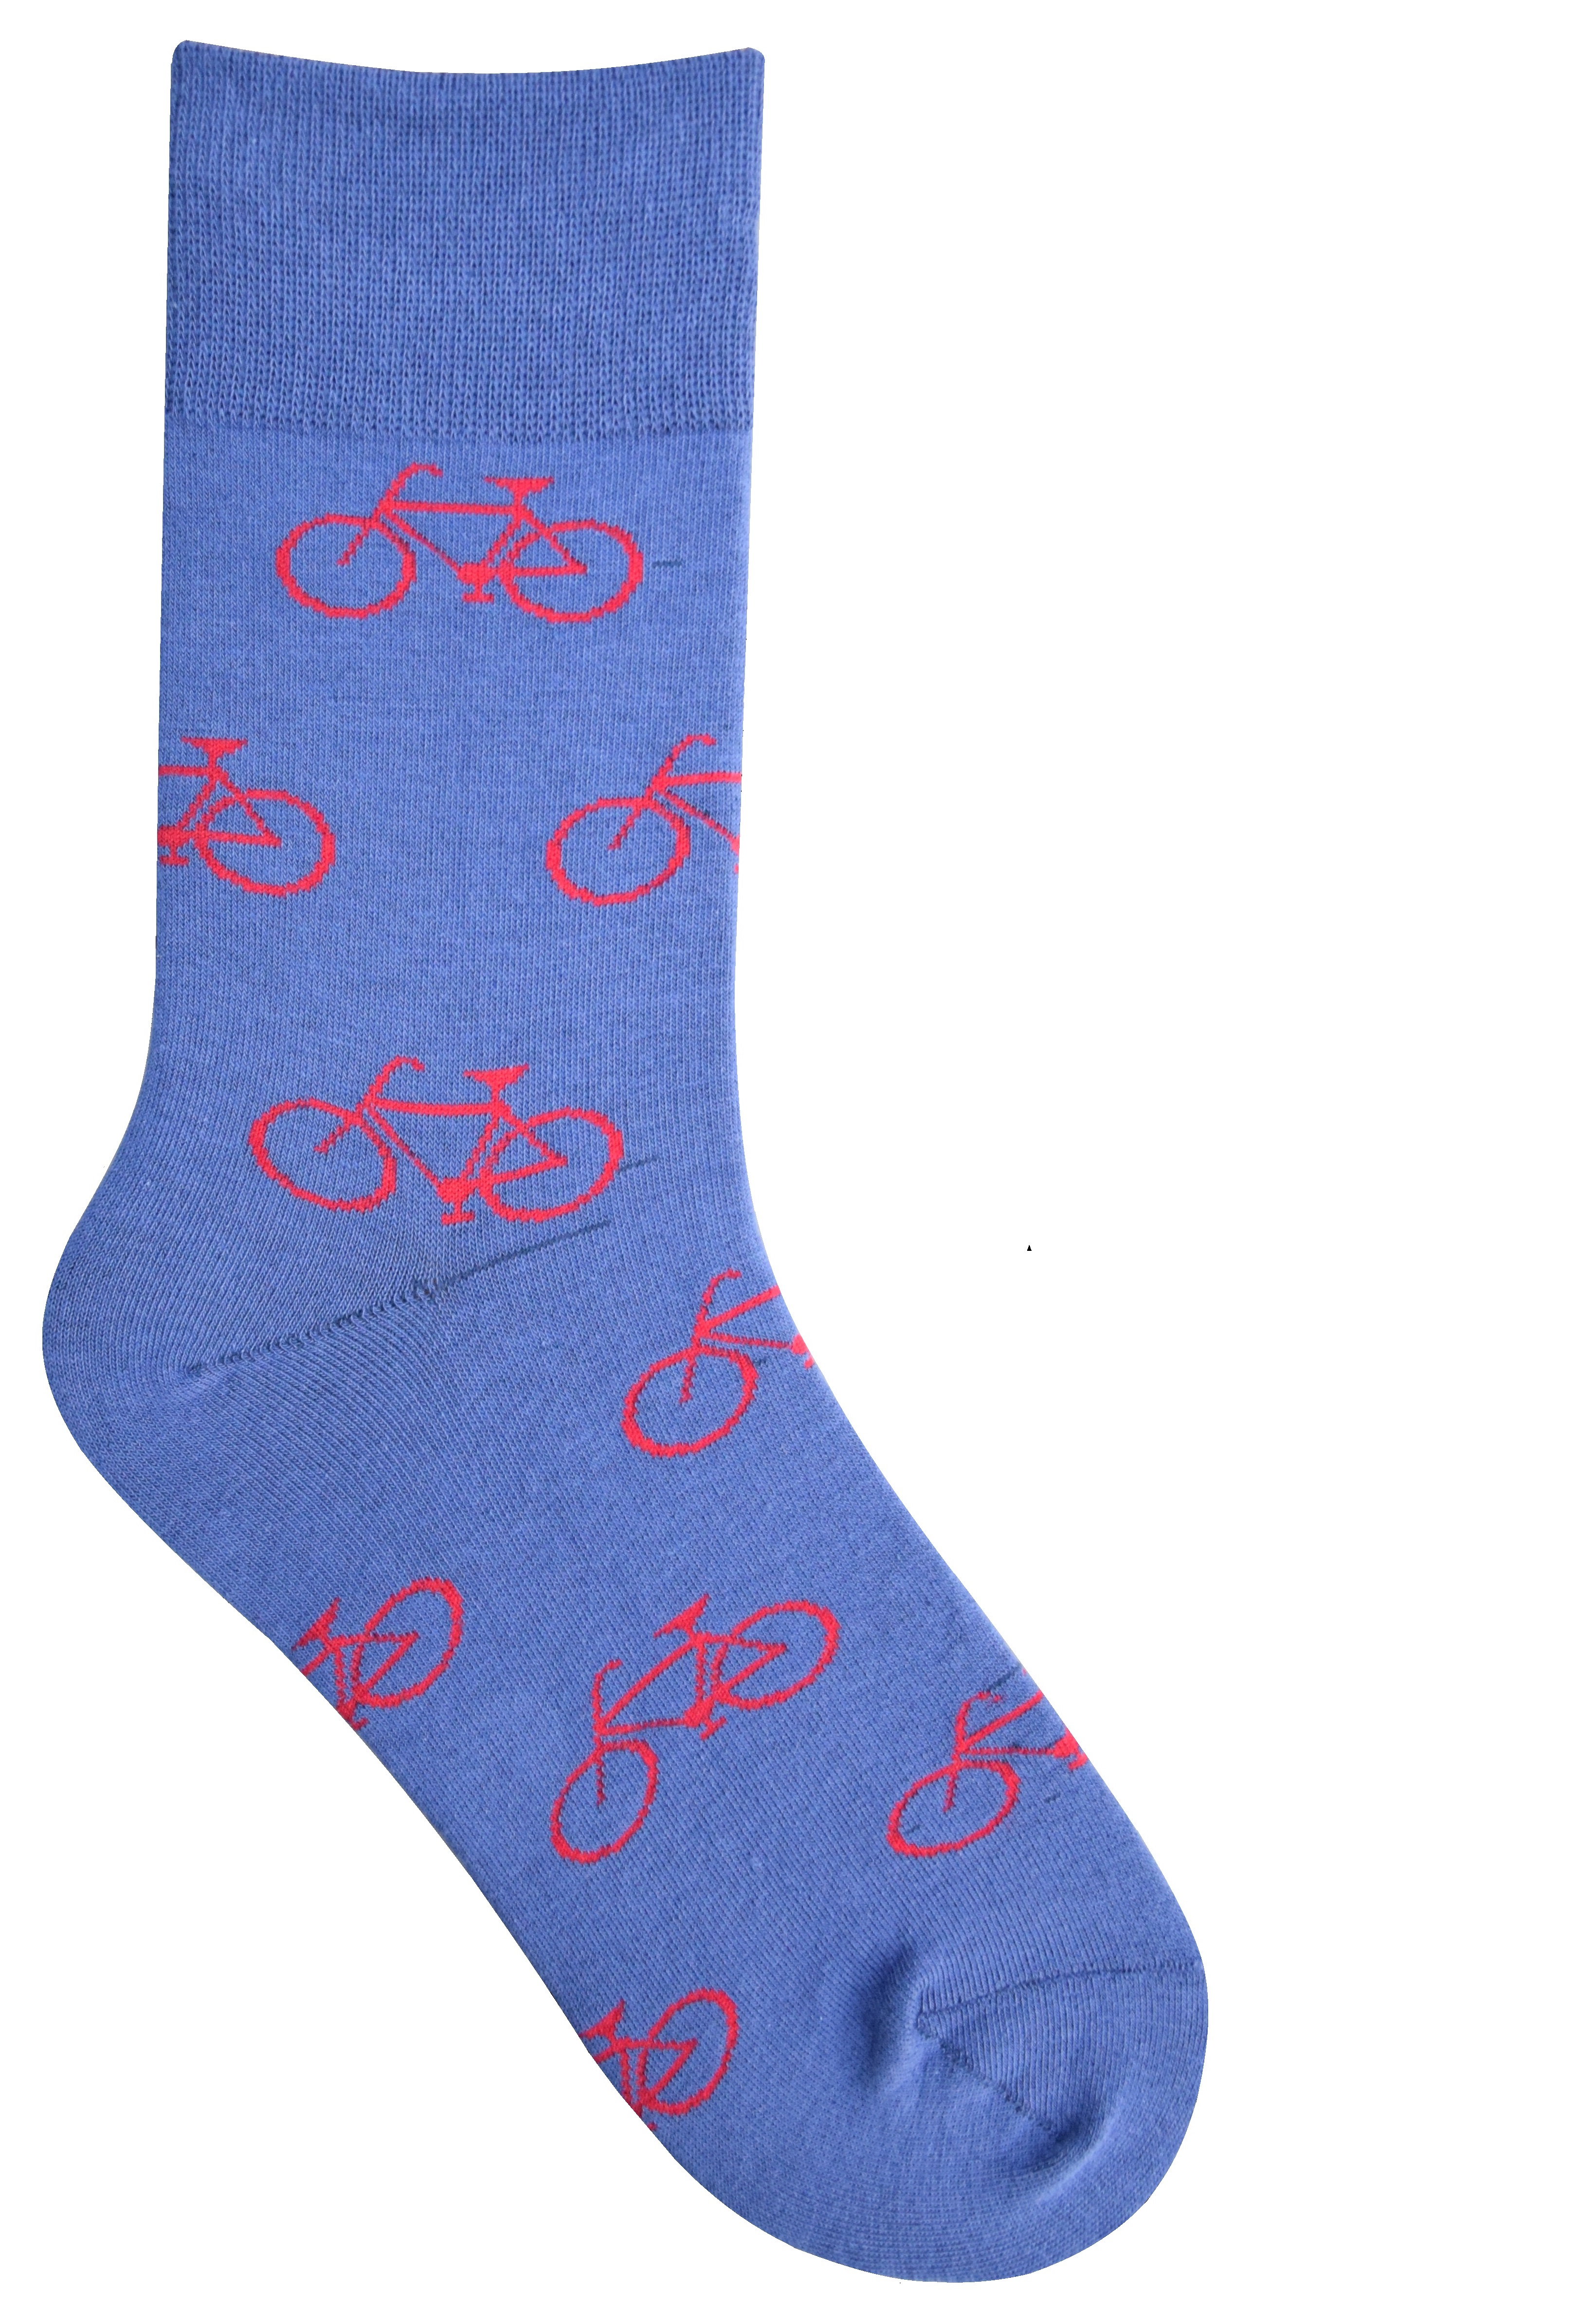 Fahrrad Socken **** Gr. 36-41/42-47